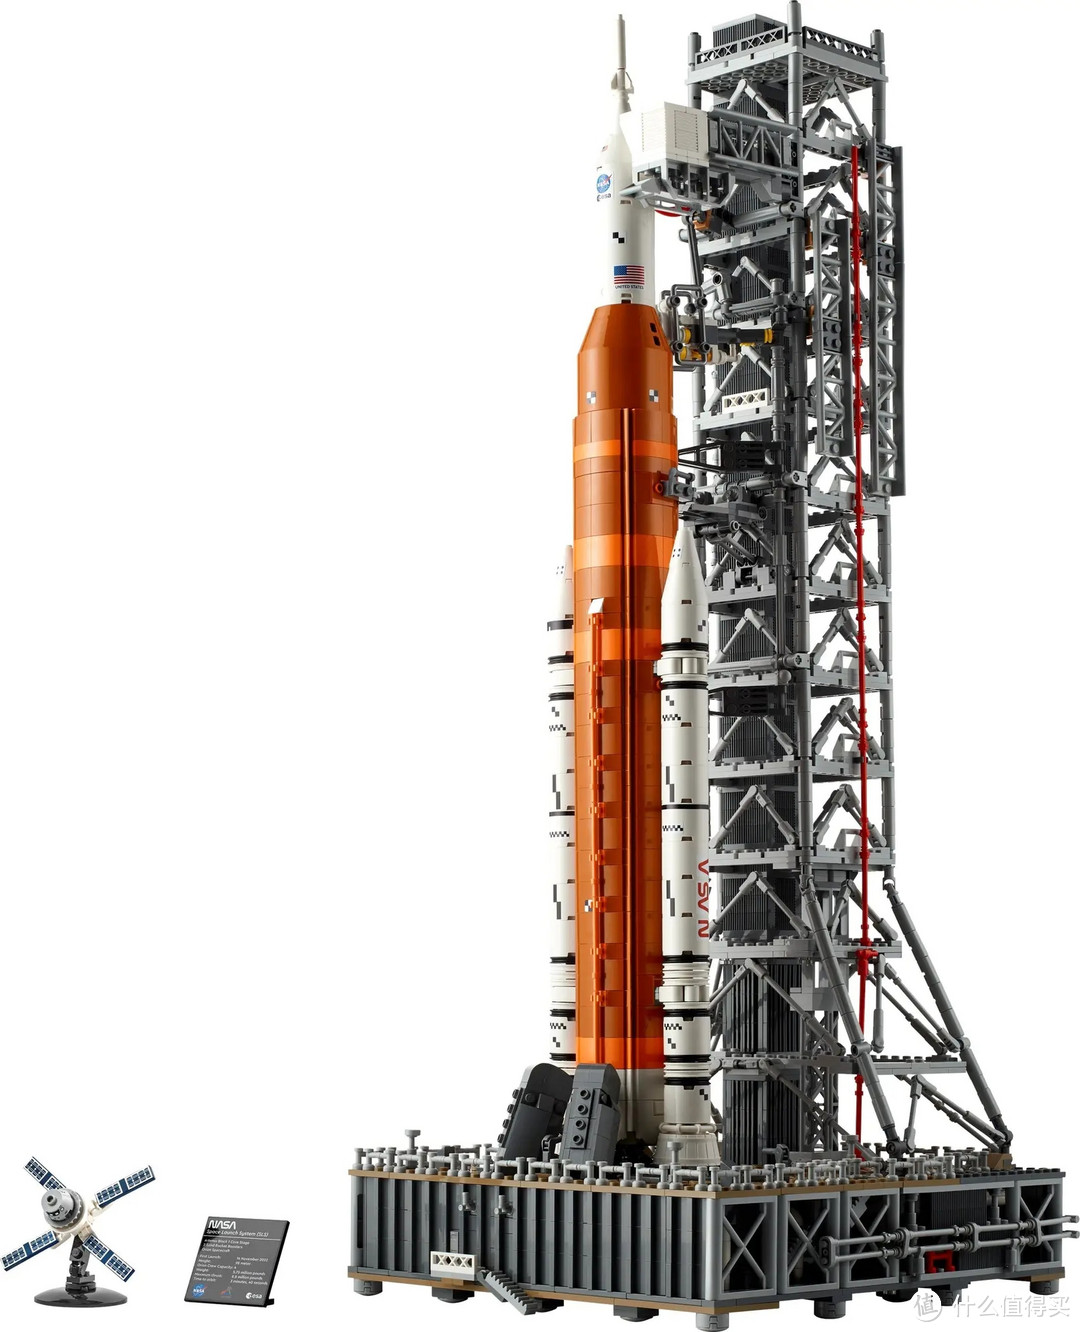 今年乐高太空题材重磅套装已发布：乐高 10341 NASA Artemis 太空发射系统、乐高 31212 银河系